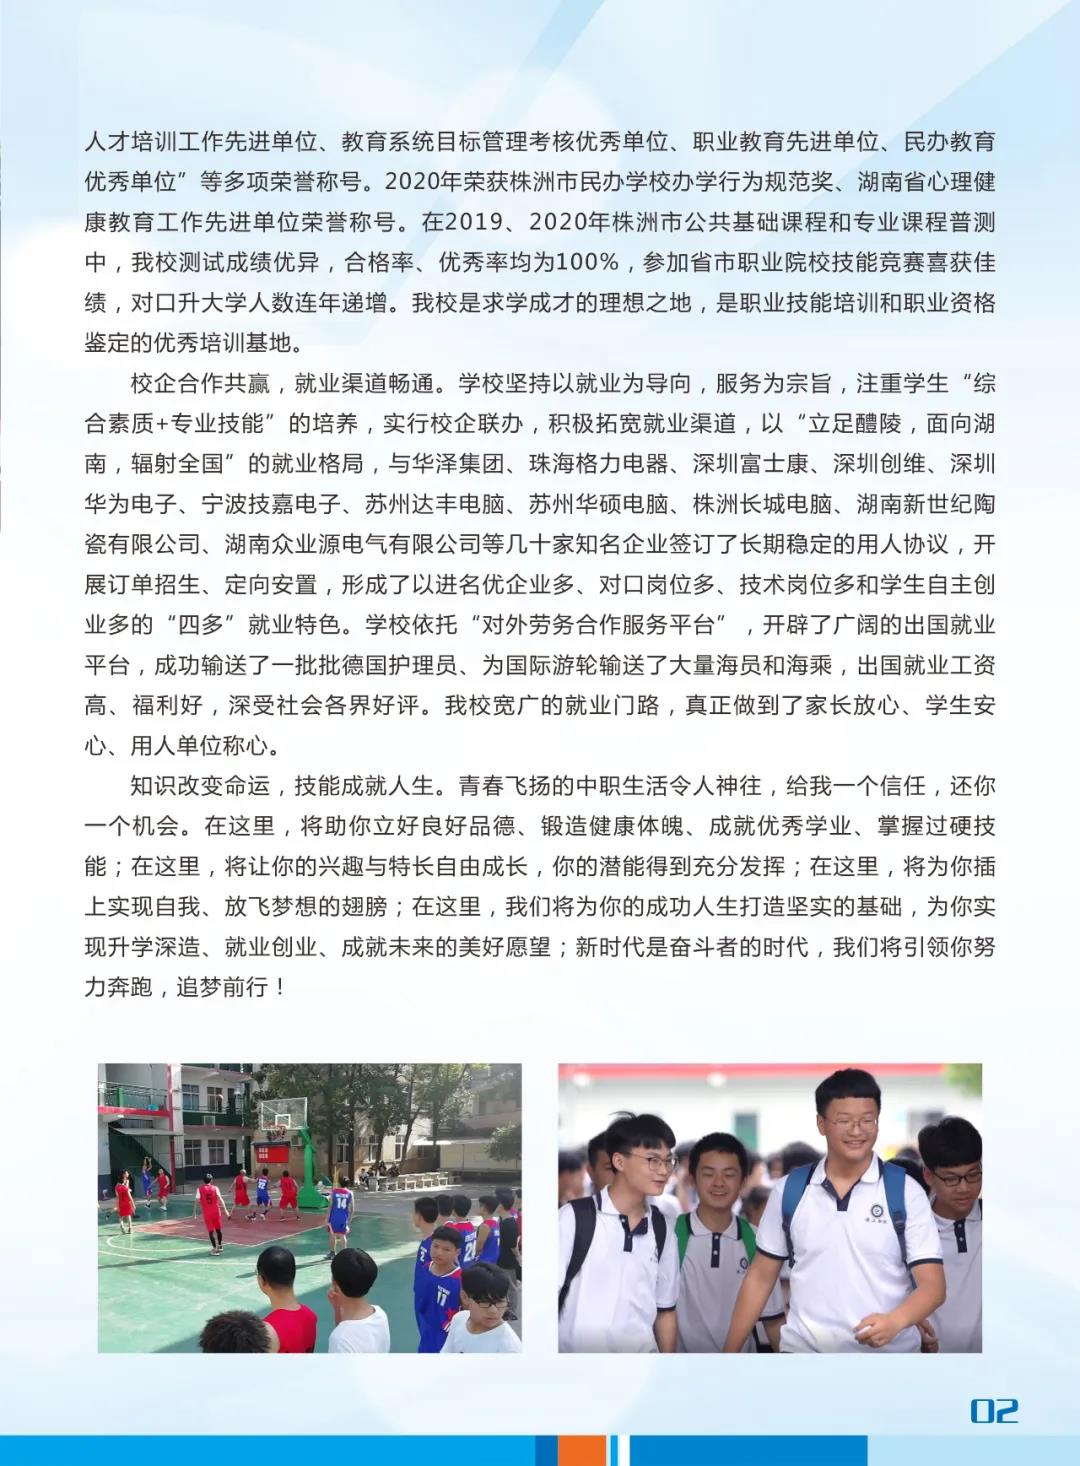 醴陵市渌江职业技术学校2021年招生简章